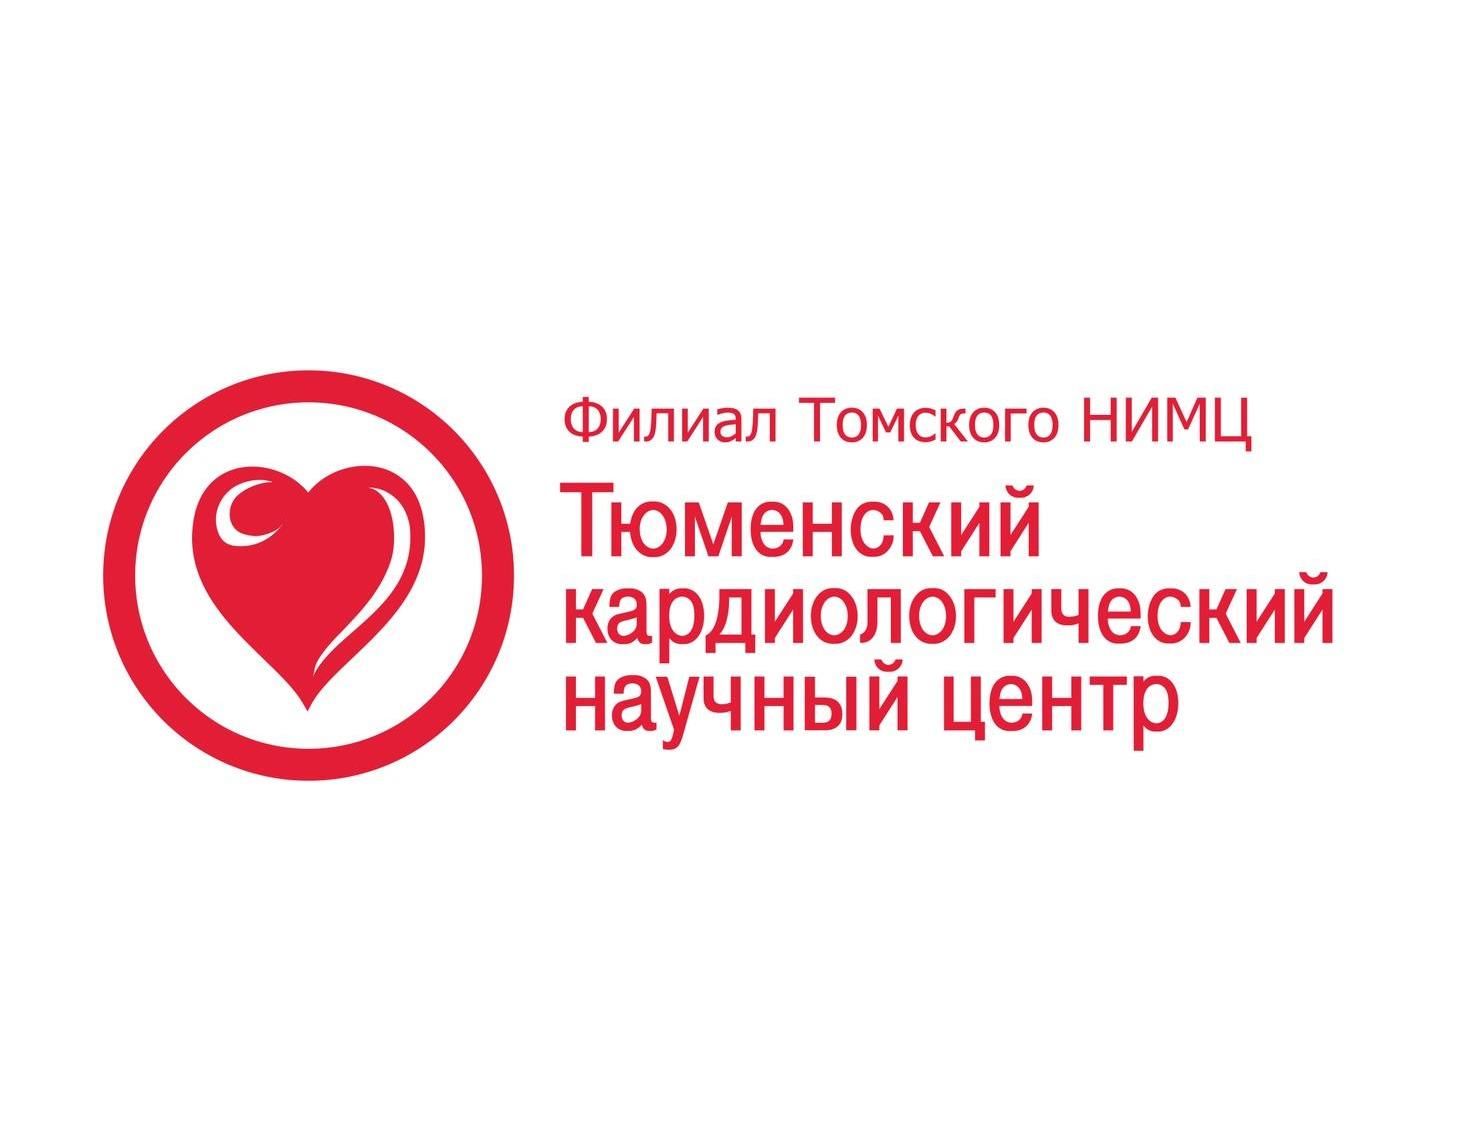 22-й Конгресс Европейского общества по артериальной гипертонии и профилактике сердечно-сосудистых заболеваний